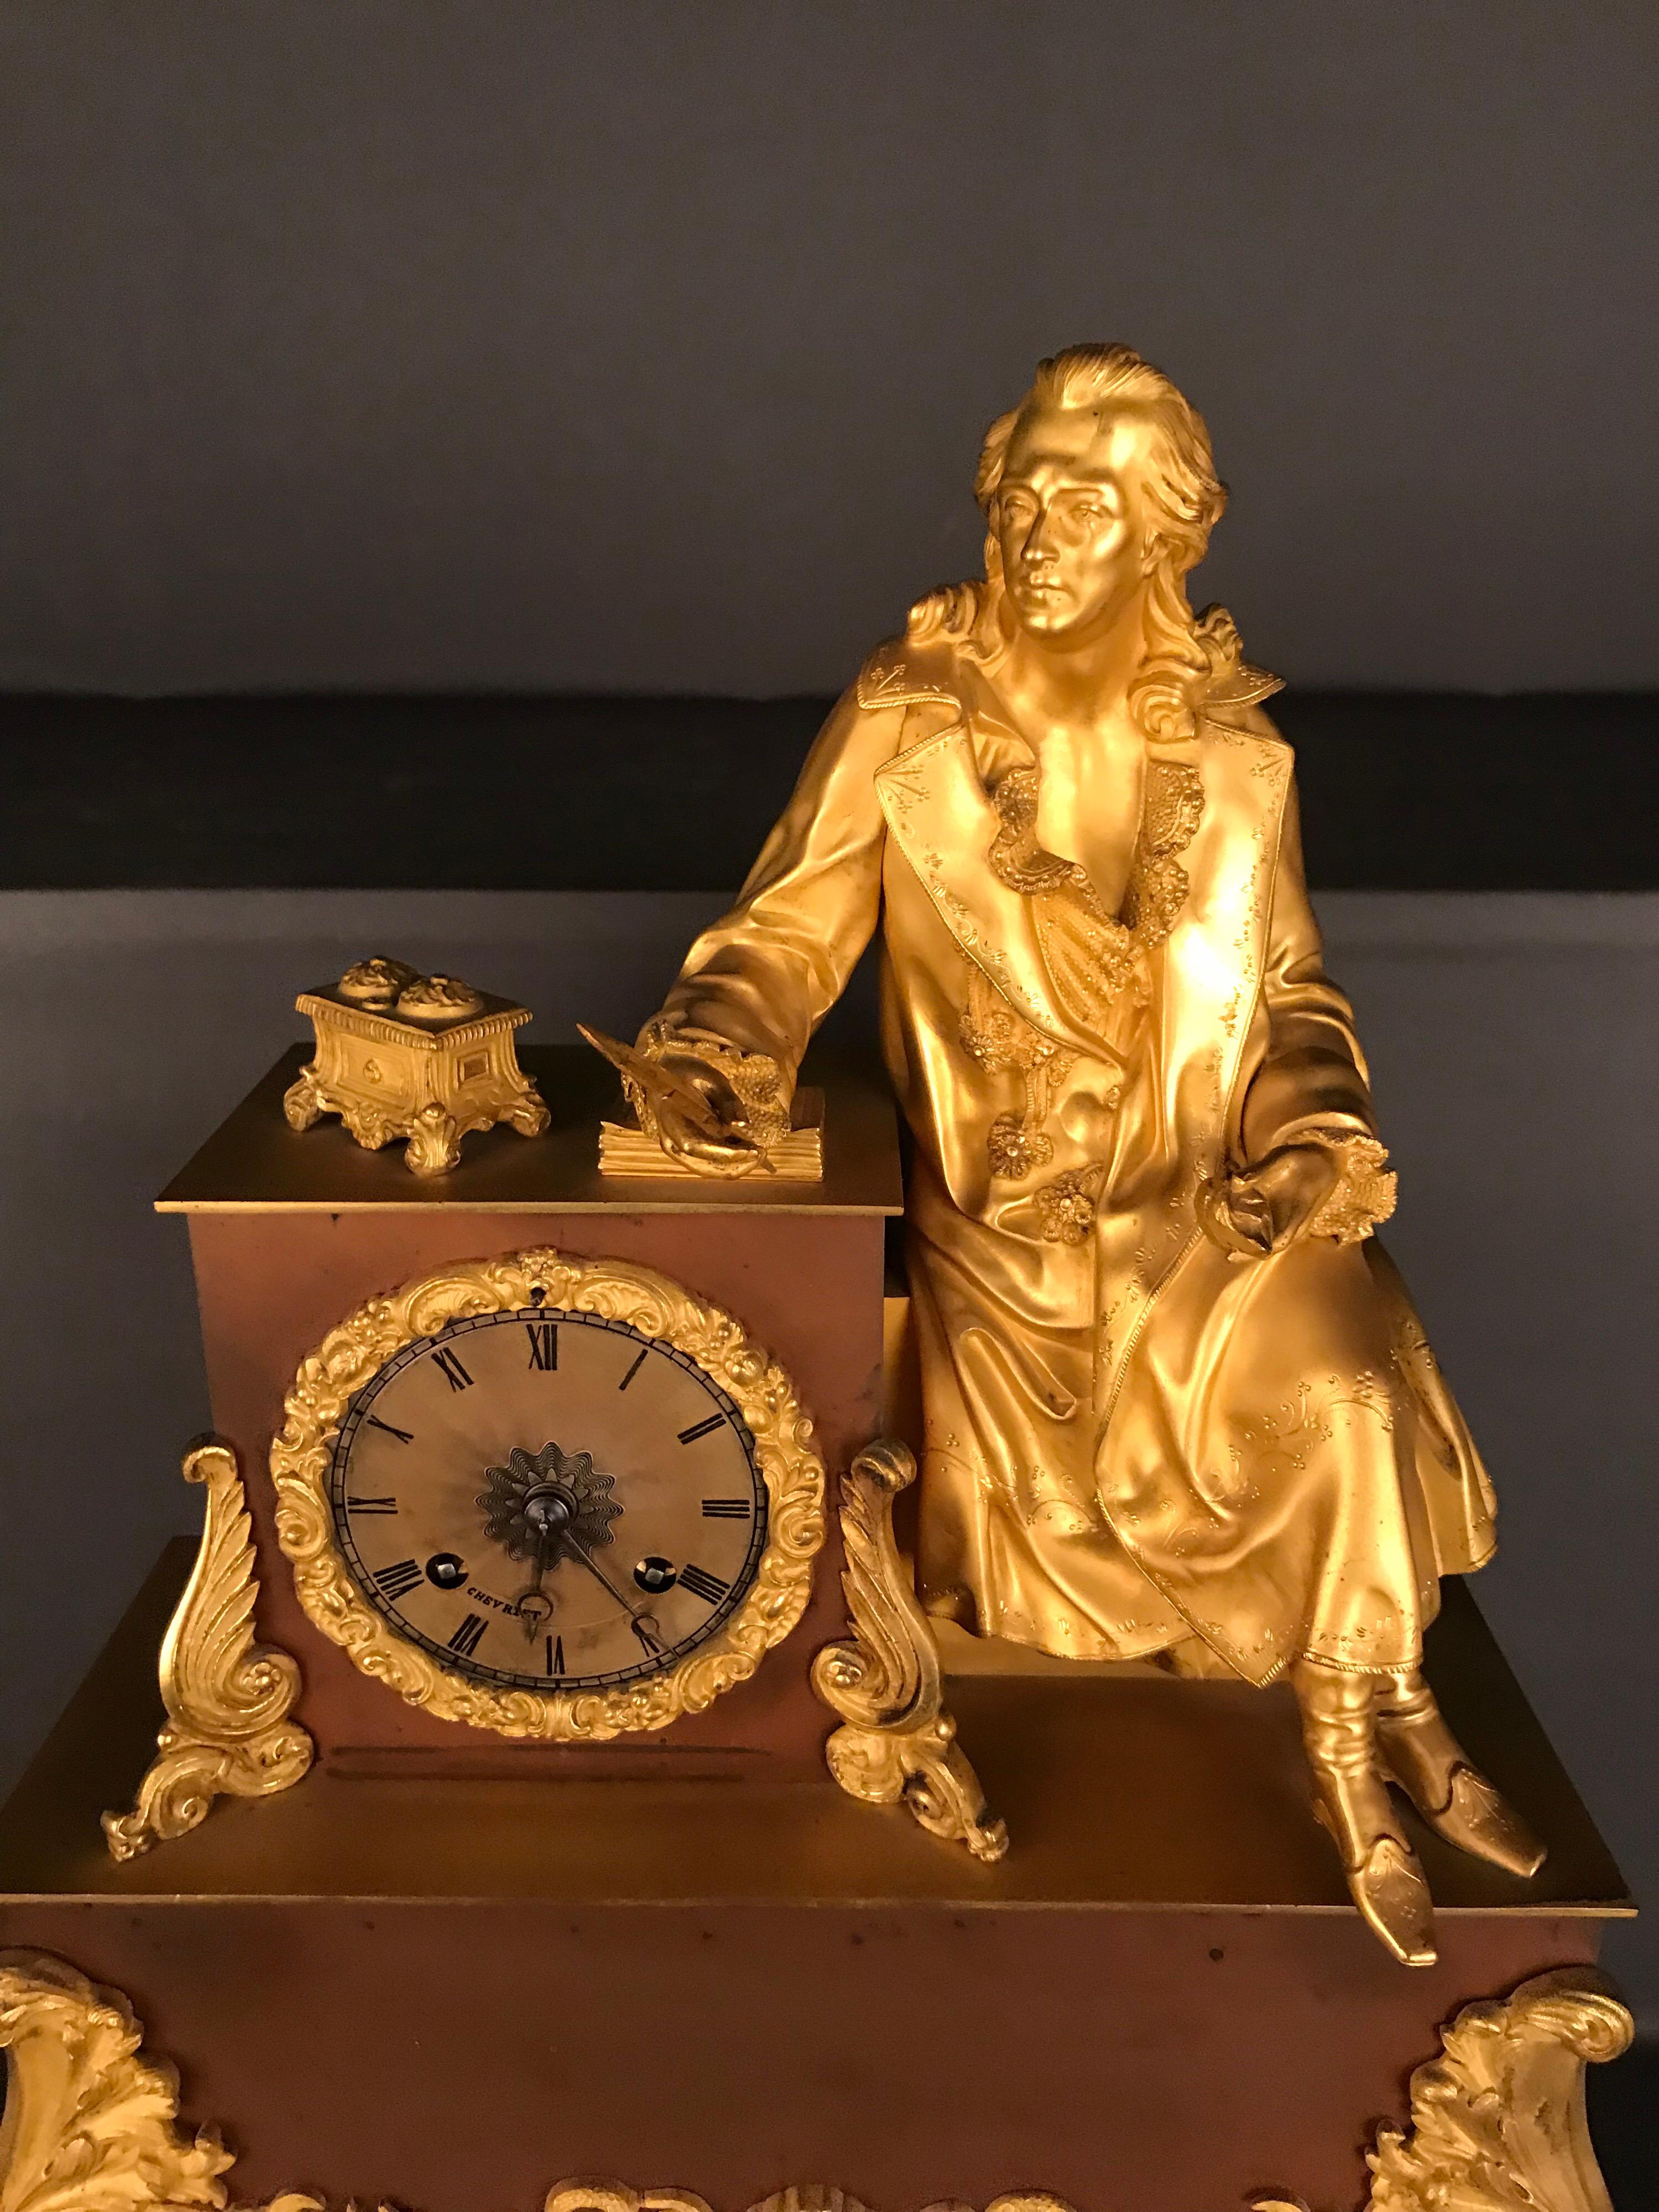 Très belle pendule, vers 1870
Horloge en laiton doré au feu
L'horloge est de cherviet
Napoléon 3
La précision du mouvement doit être vérifiée
Poète assis, un stylo à la main.